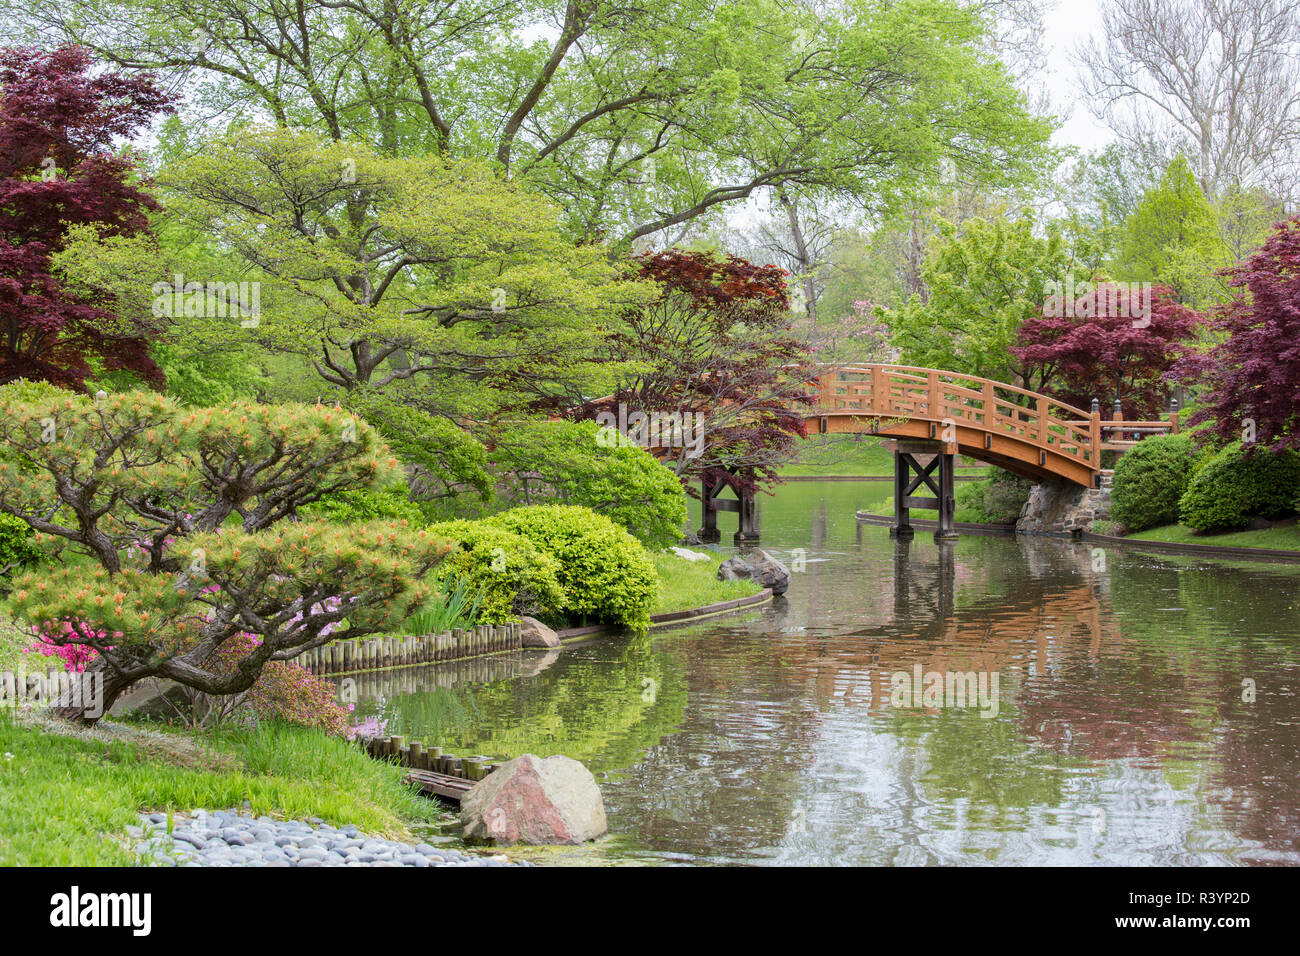 Japanischer Garten im Frühling, Missouri Botanical Garden, St. Louis, Missouri Stockfoto